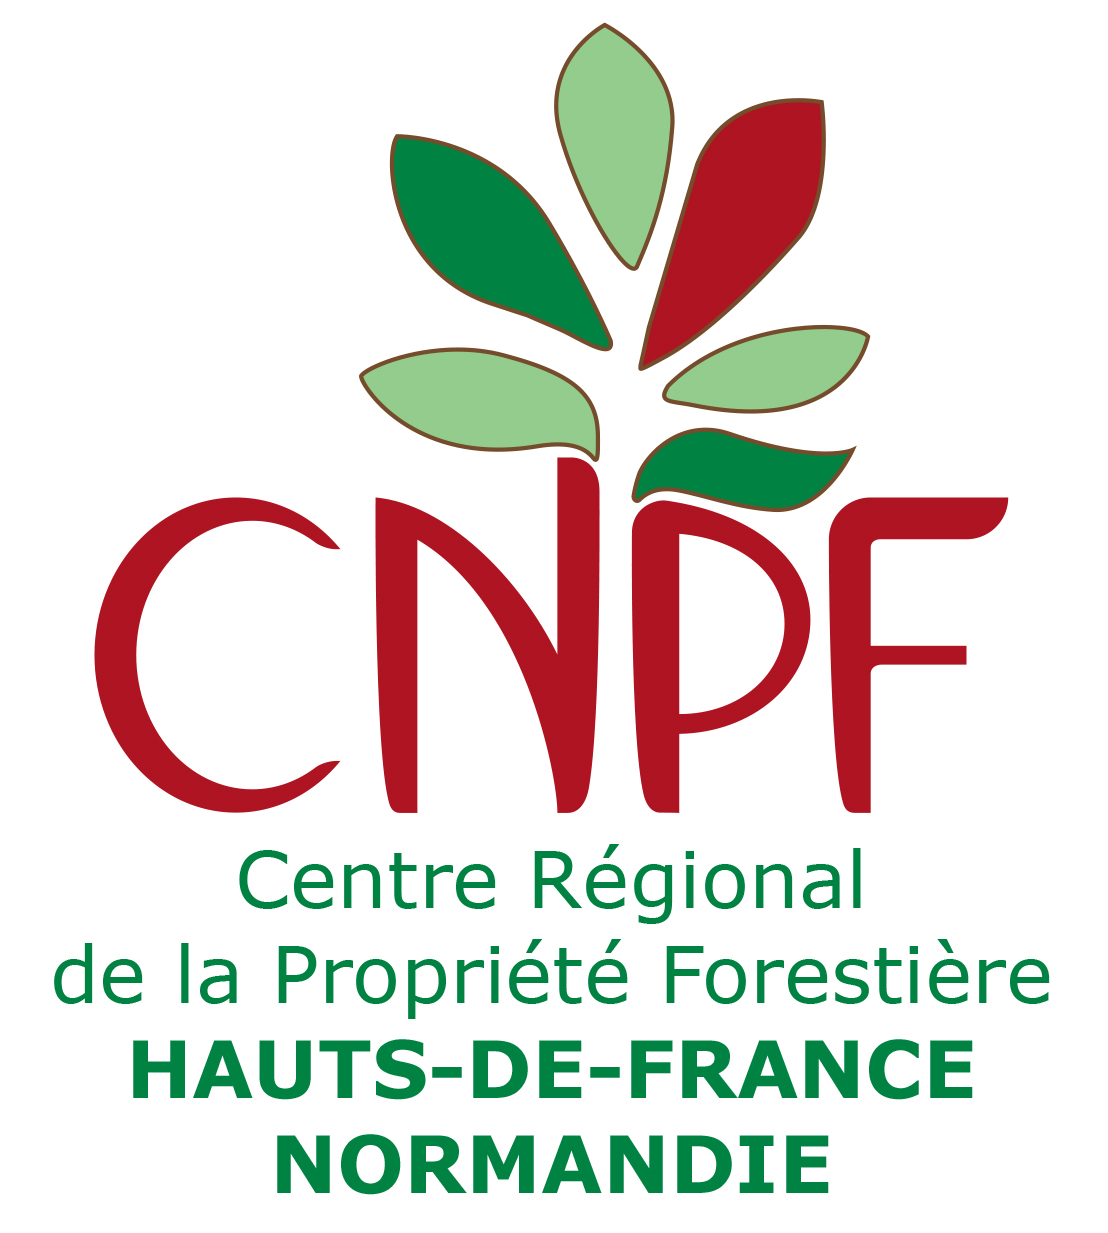 CRPF Hauts-de-France-Normandie